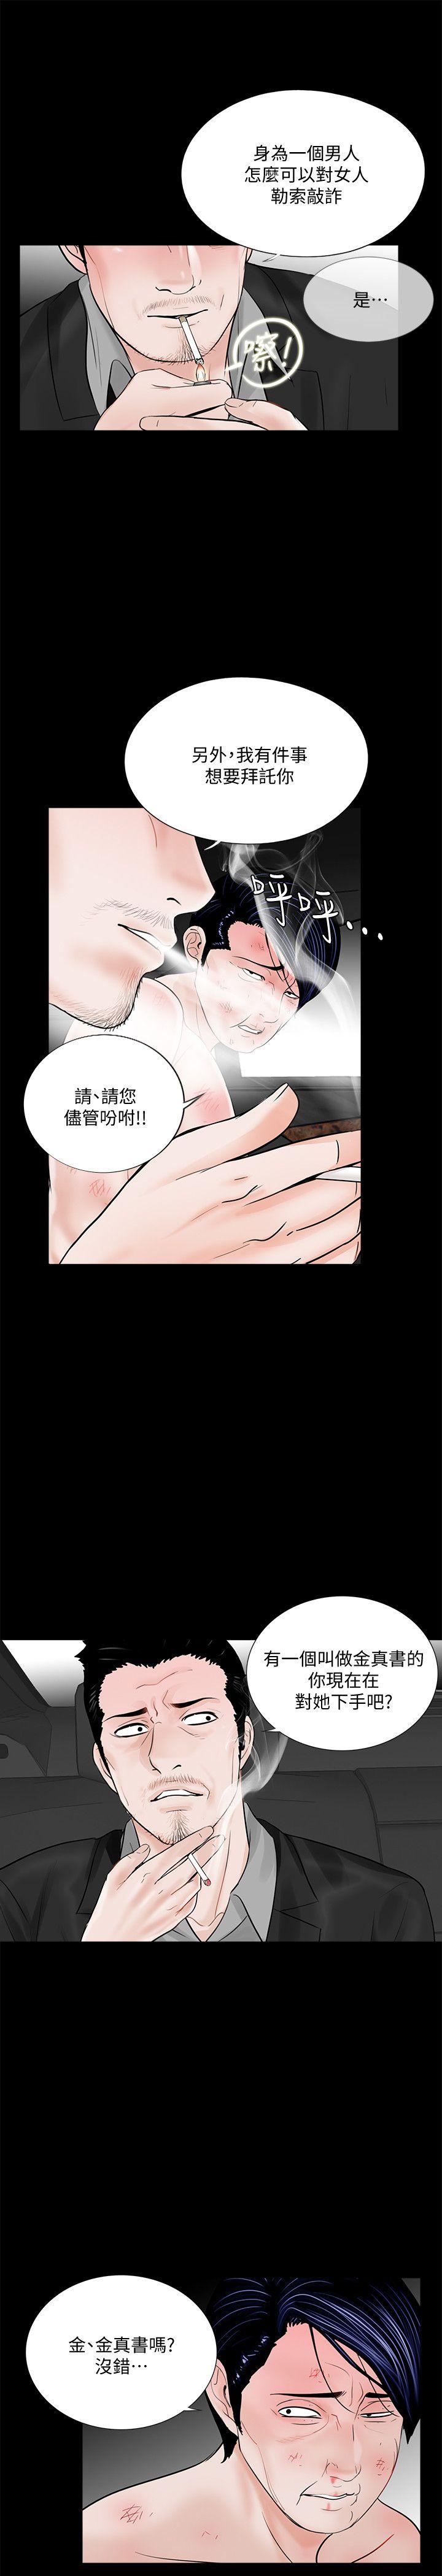 韩国污漫画 夢魘 第45话-真书的未婚夫(03) 7